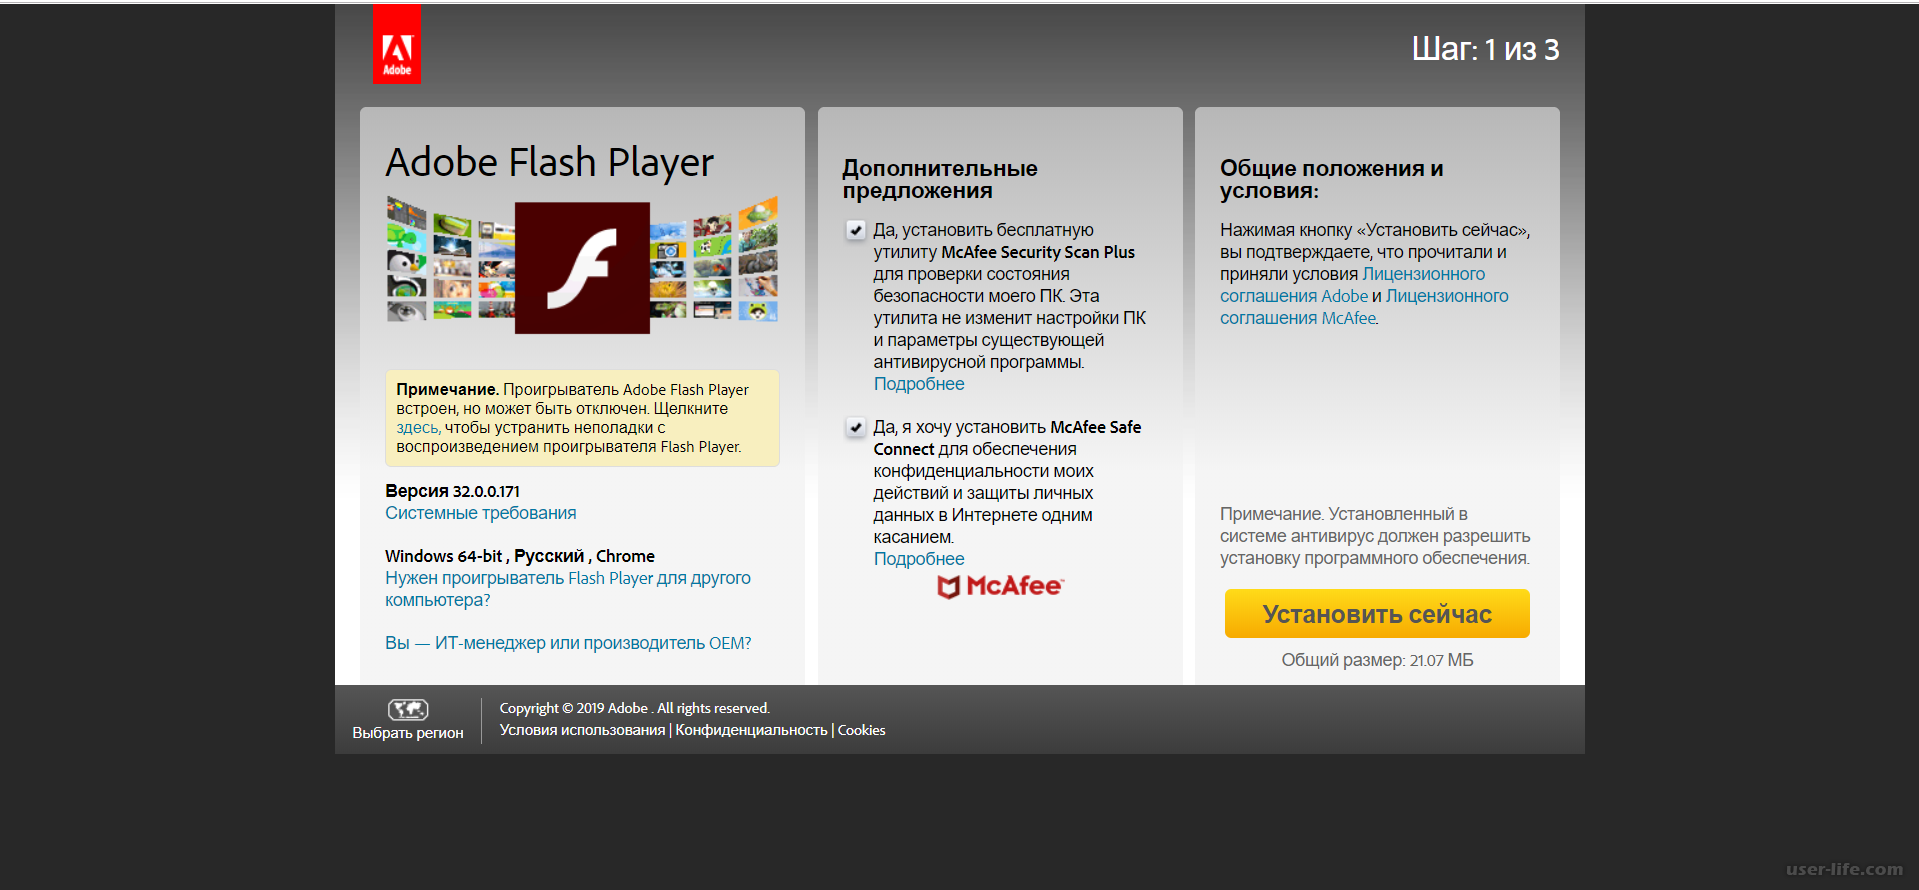 Флеш плеер 7 64. Флеш плеер для виндовс 7. Установить Flash Player для Windows 7. Как обновить флеш плеер на LG 49uj639v. Будет отключе flashplayer обхявление.